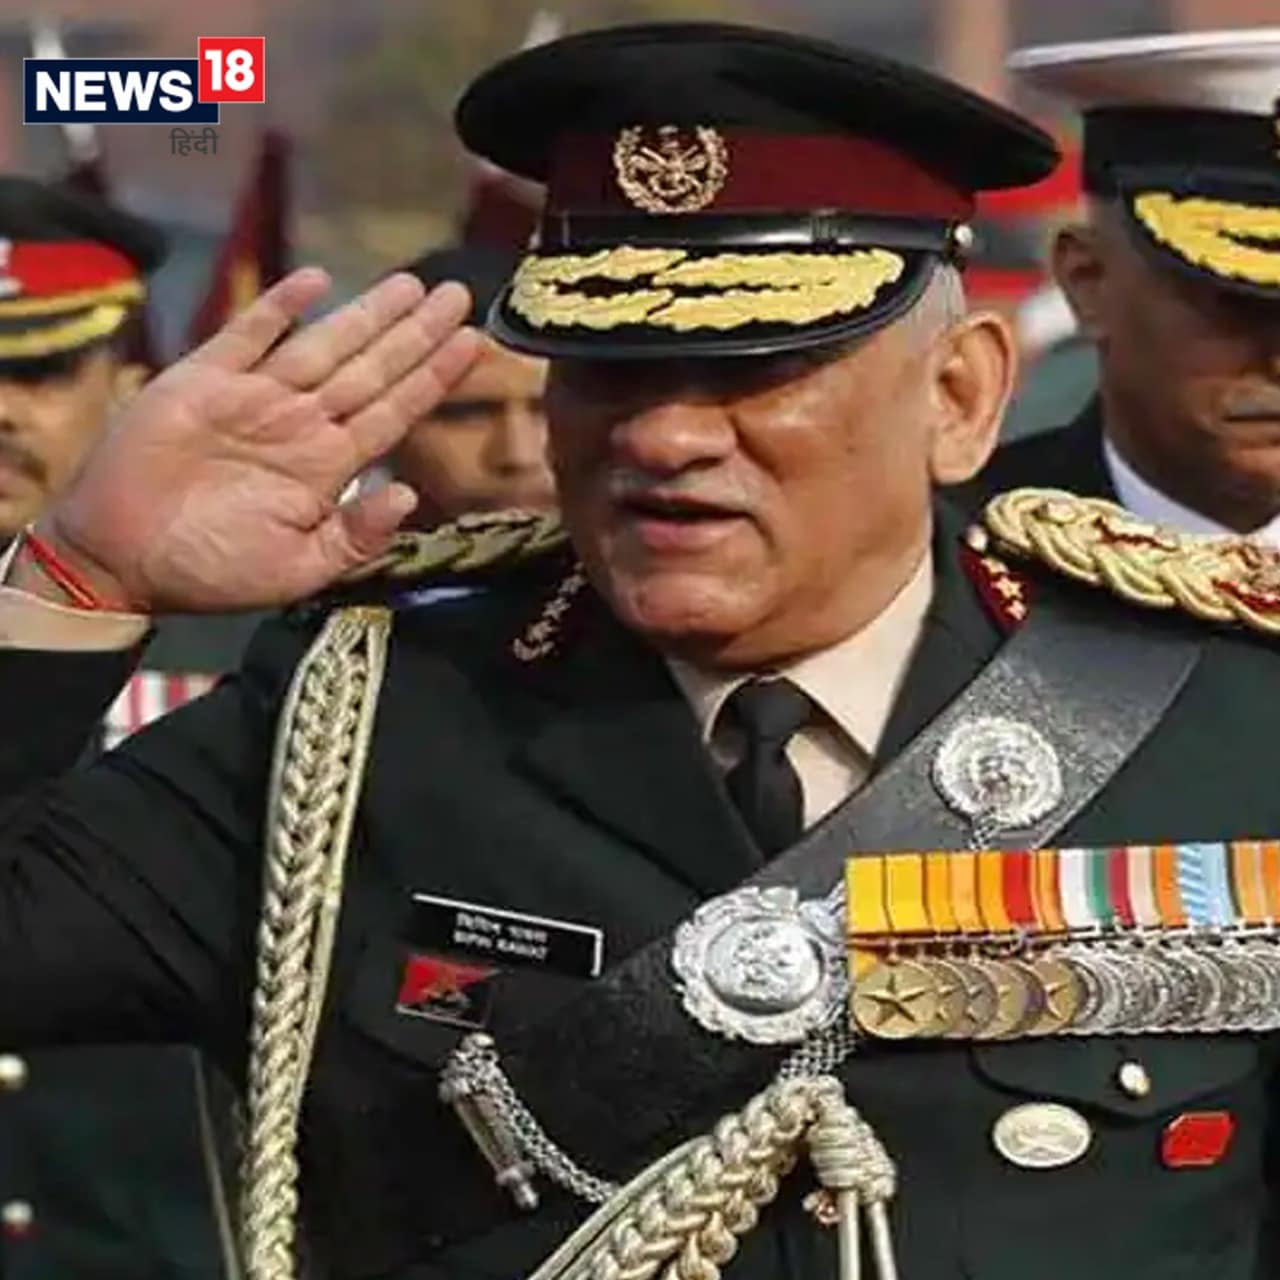  31 दिसंबर 2019 को थल सेनाध्यक्ष के तौर पर रिटायर होने के अगले दिन ही जनरल रावत देश के पहले रक्षा प्रमुख बन गये. रावत 31 दिसंबर 2016 से 31 दिसंबर 2019 तक थल सेनाध्यक्ष के पद पर रहे. .